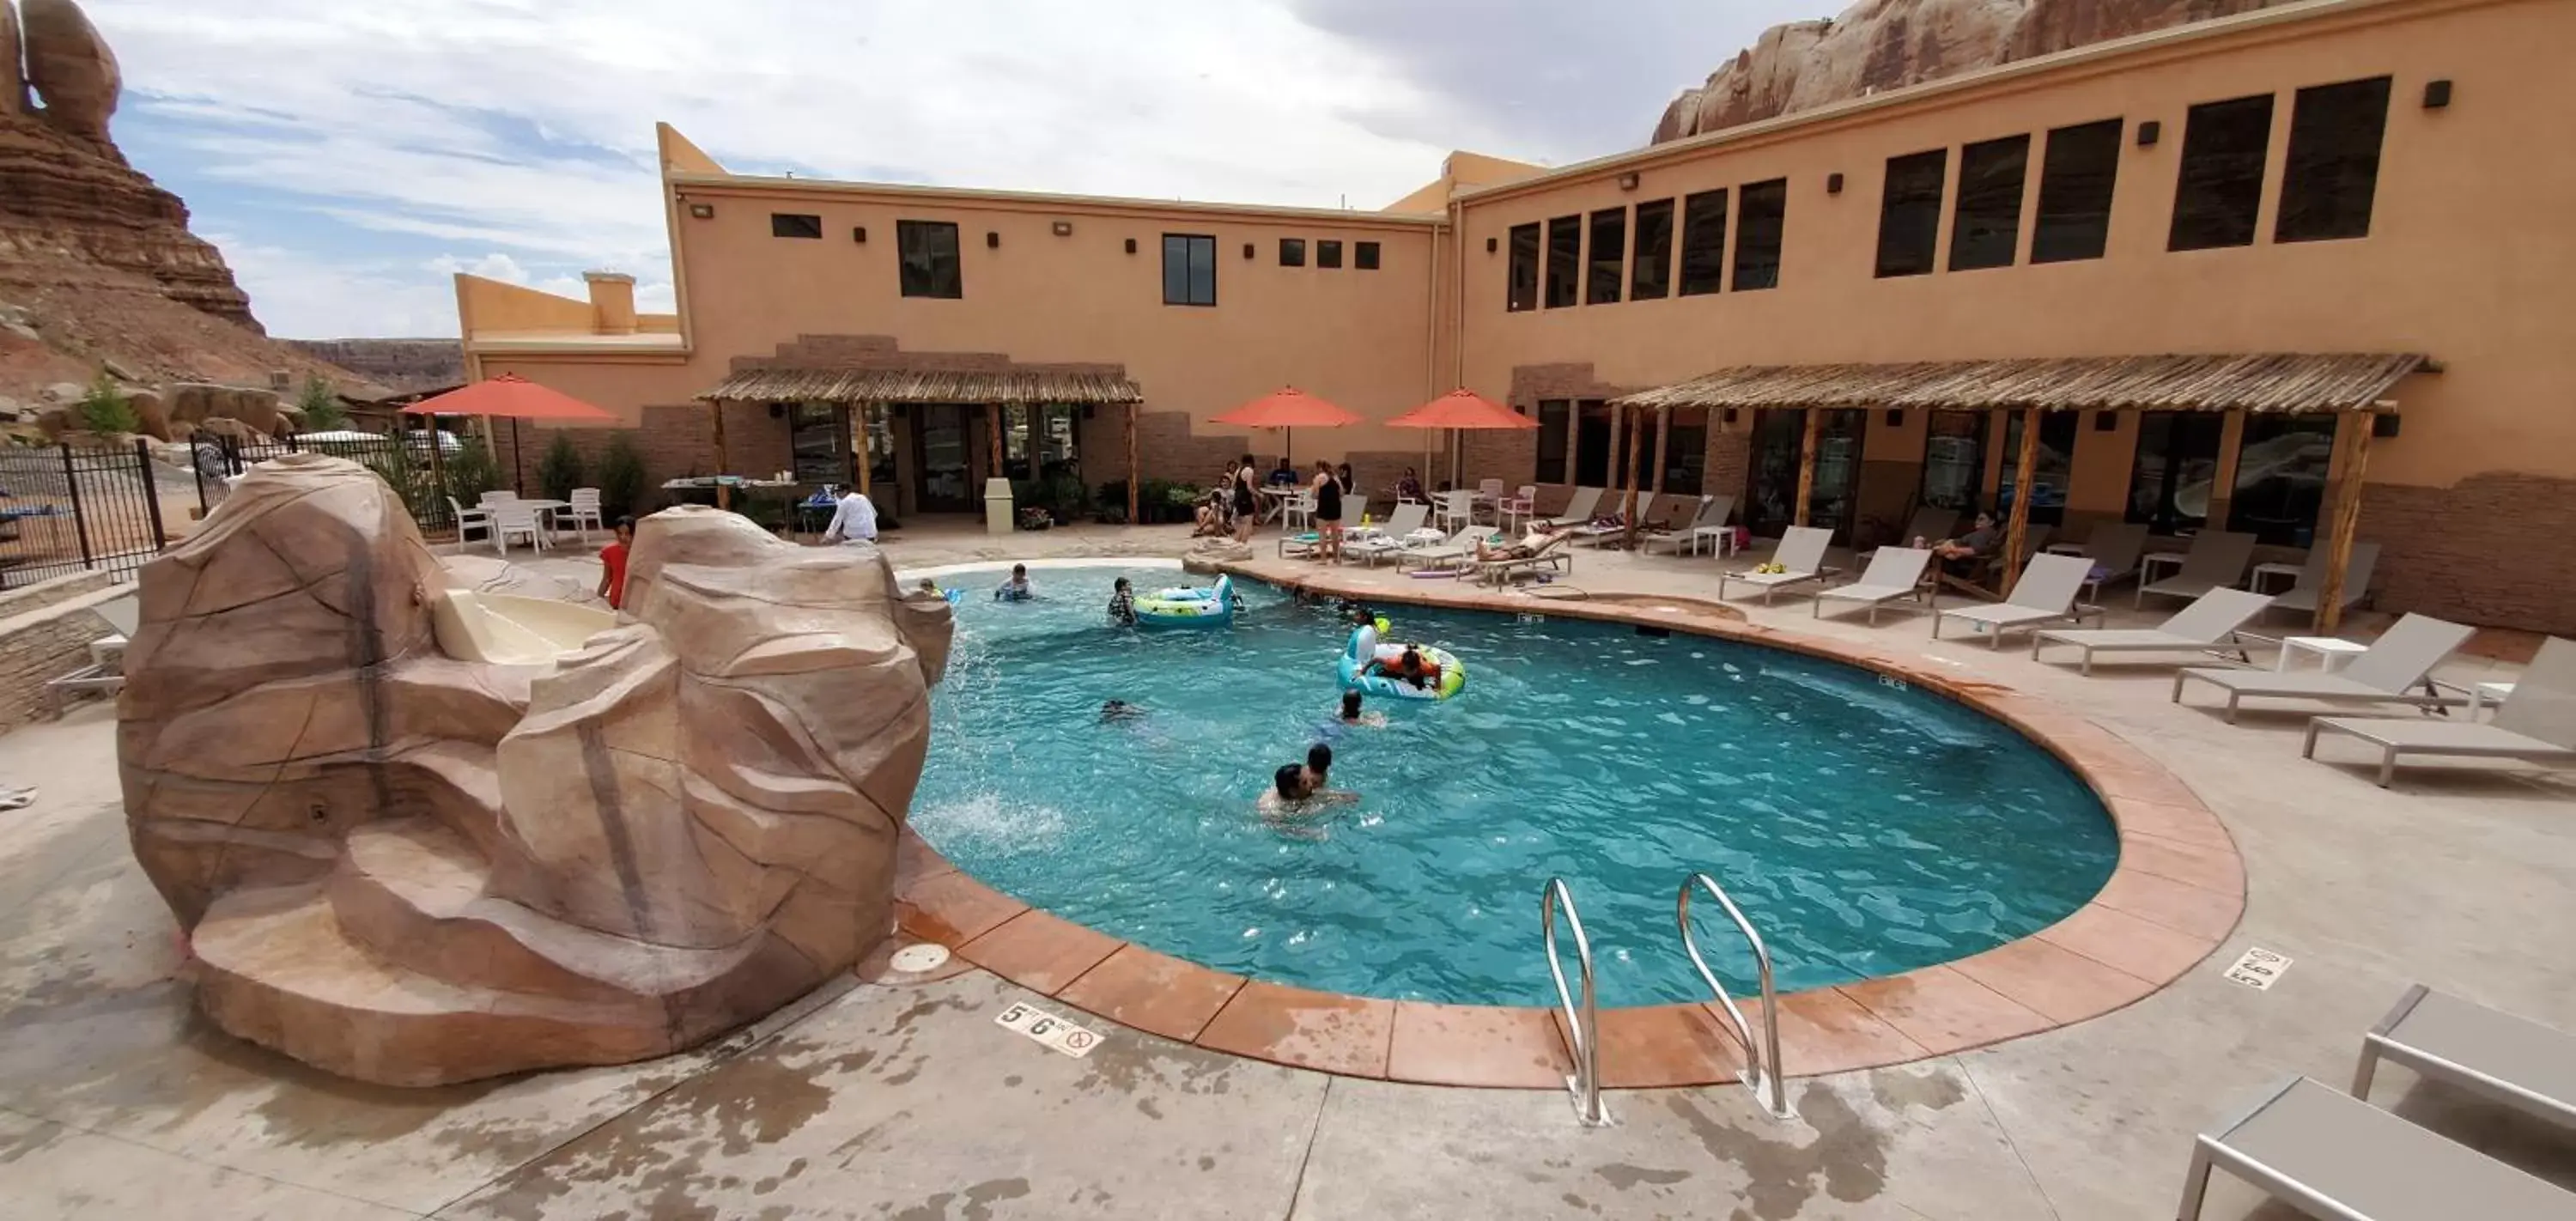 Swimming Pool in Bluff Dwellings Resort